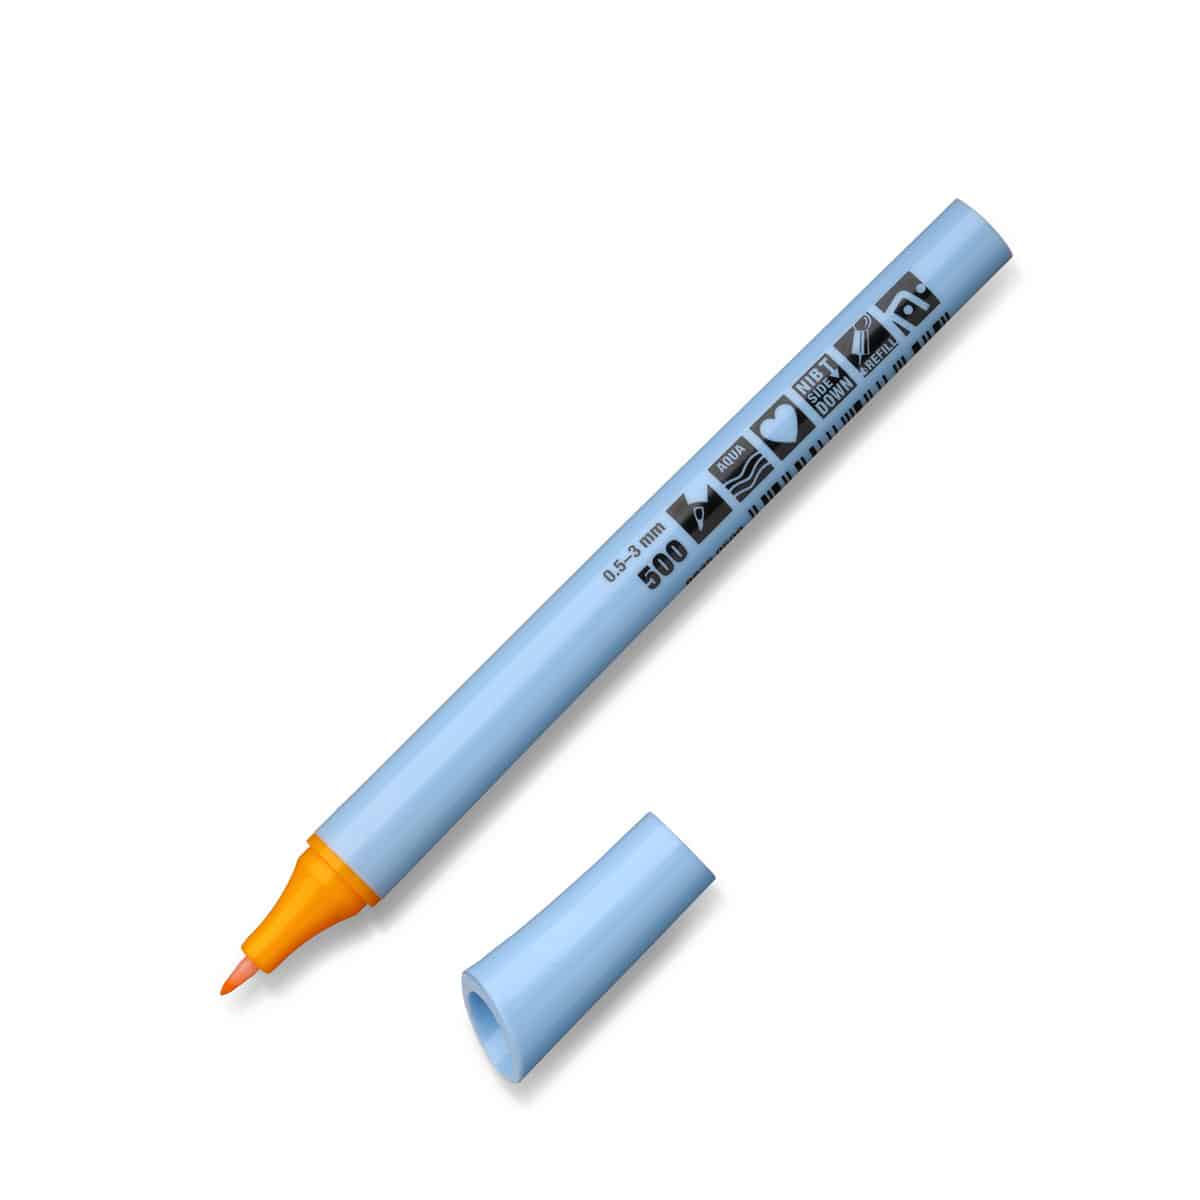 Neuland FineOne® Flex, flexible fiber nib 0.5-3 mm, single colors- 500 brillantgelb